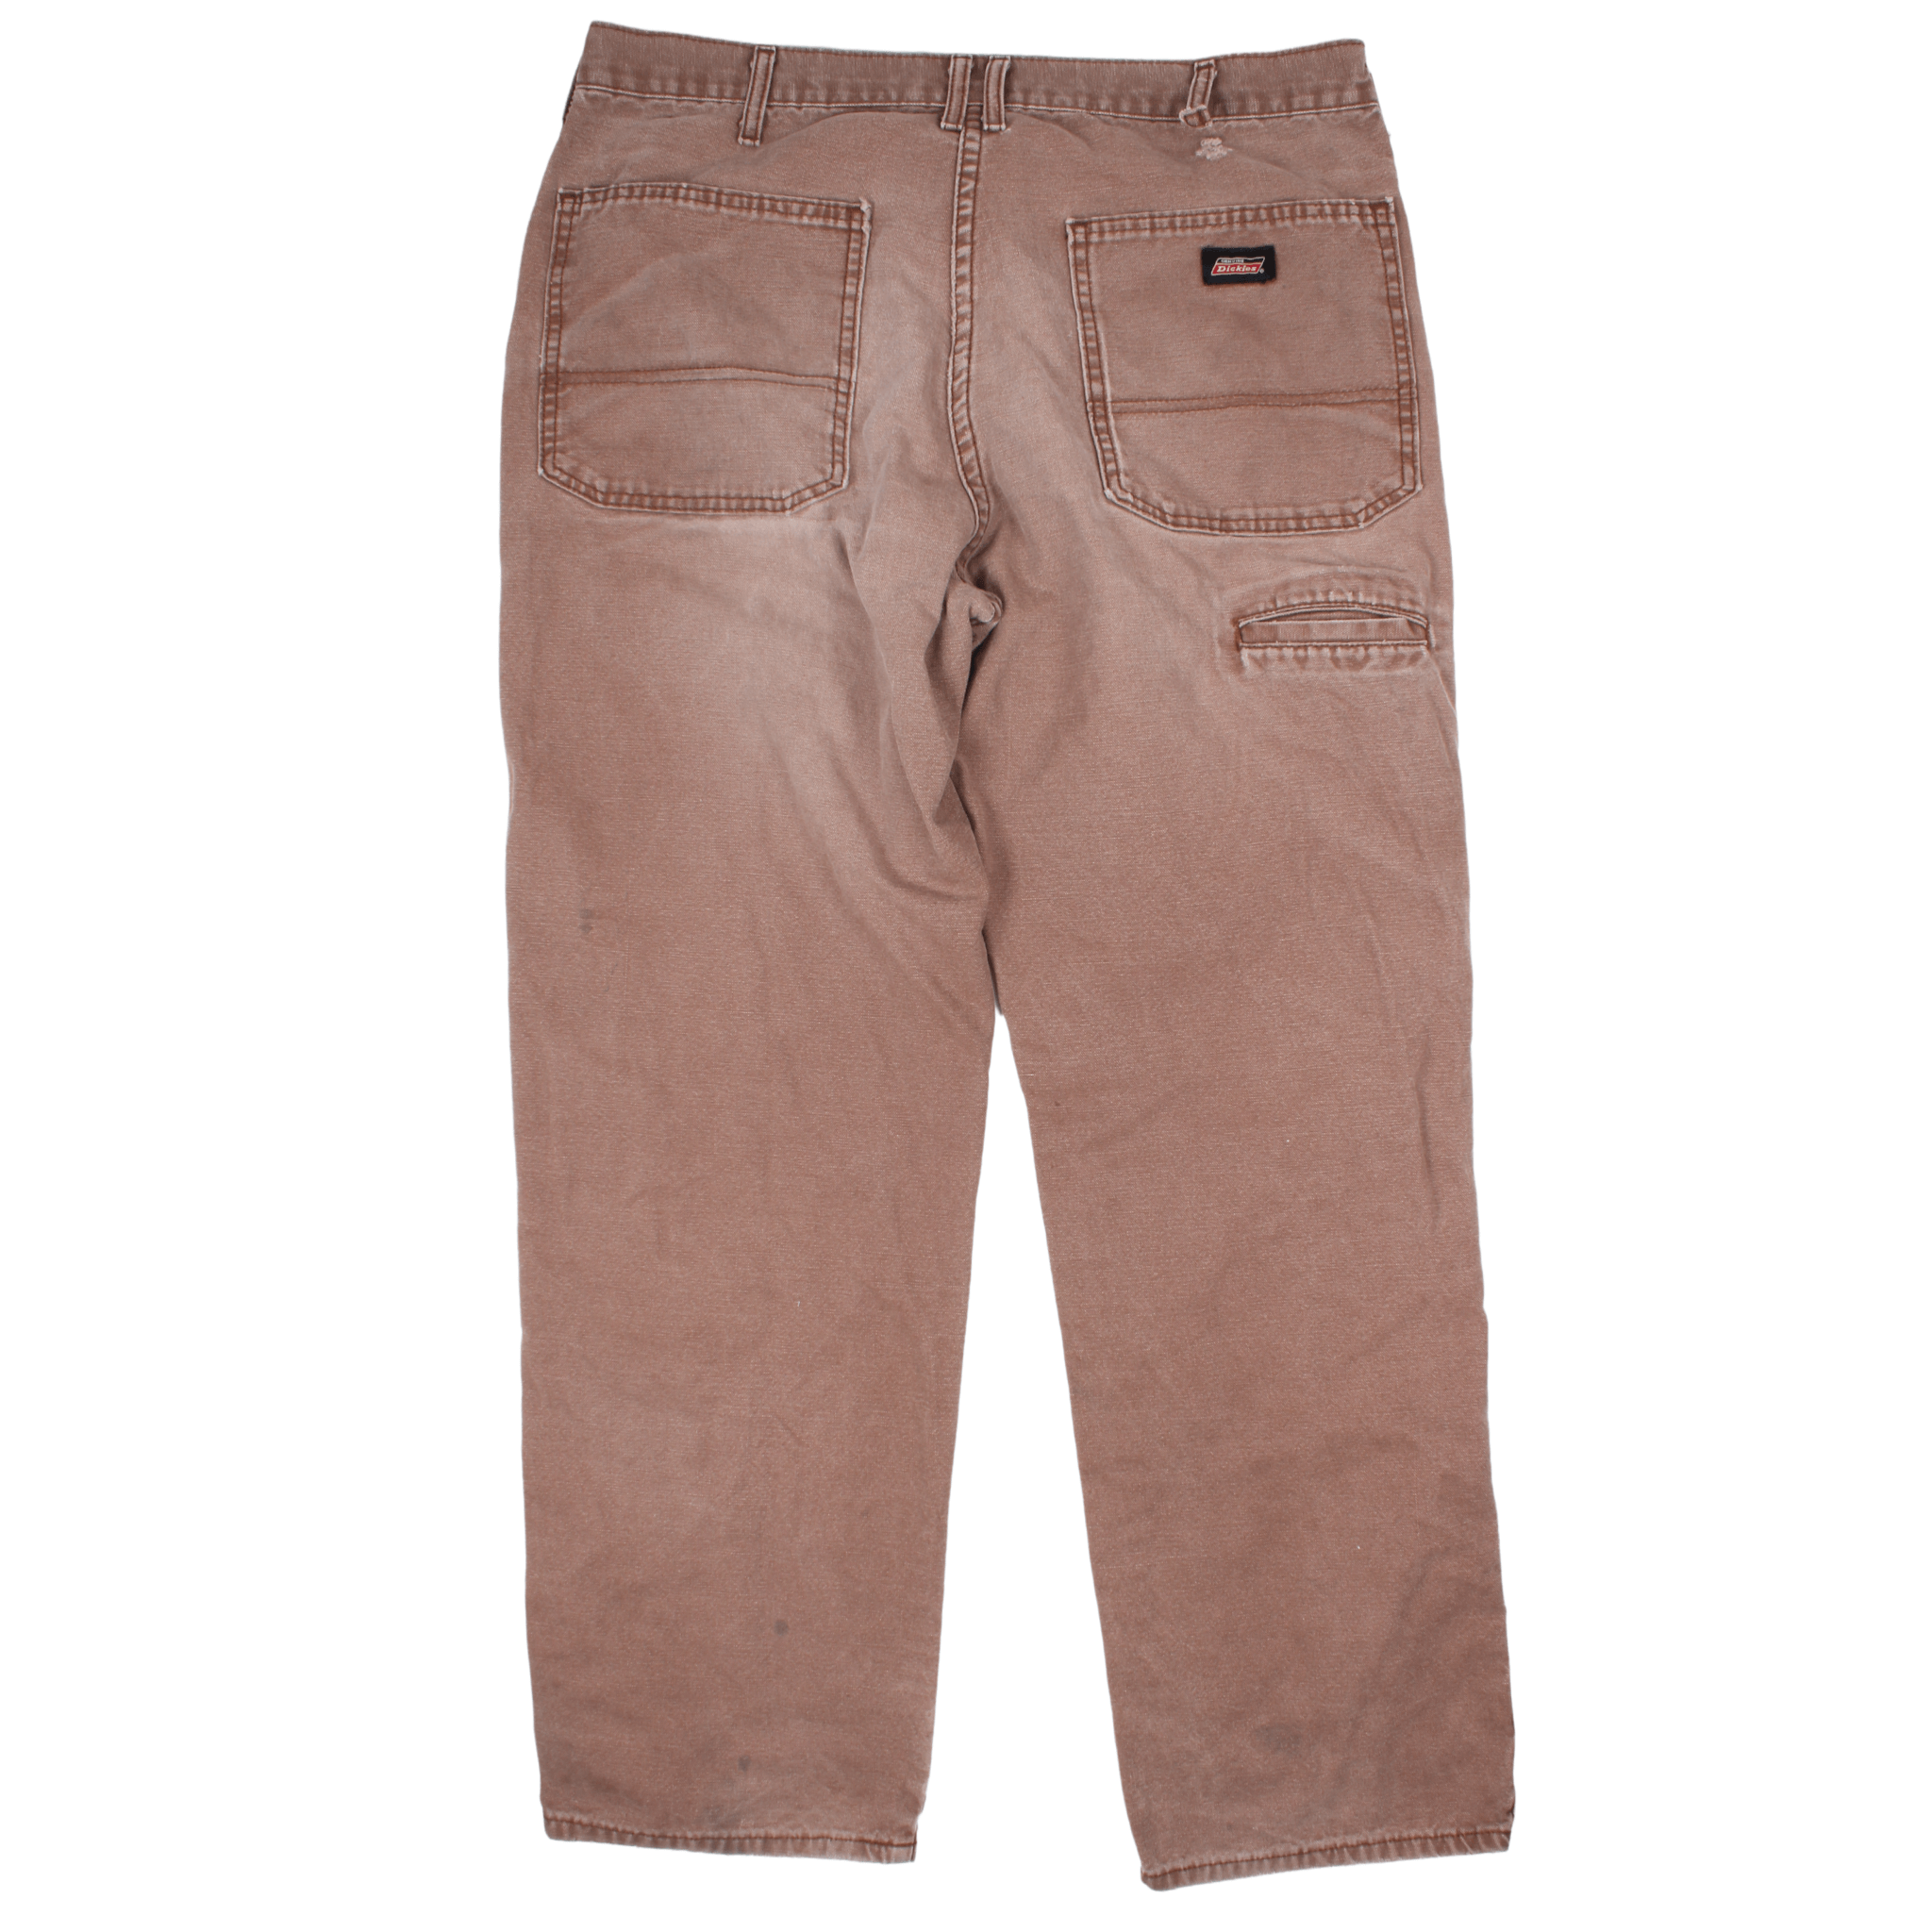 Vintage Dickies Carpenter Trousers (34